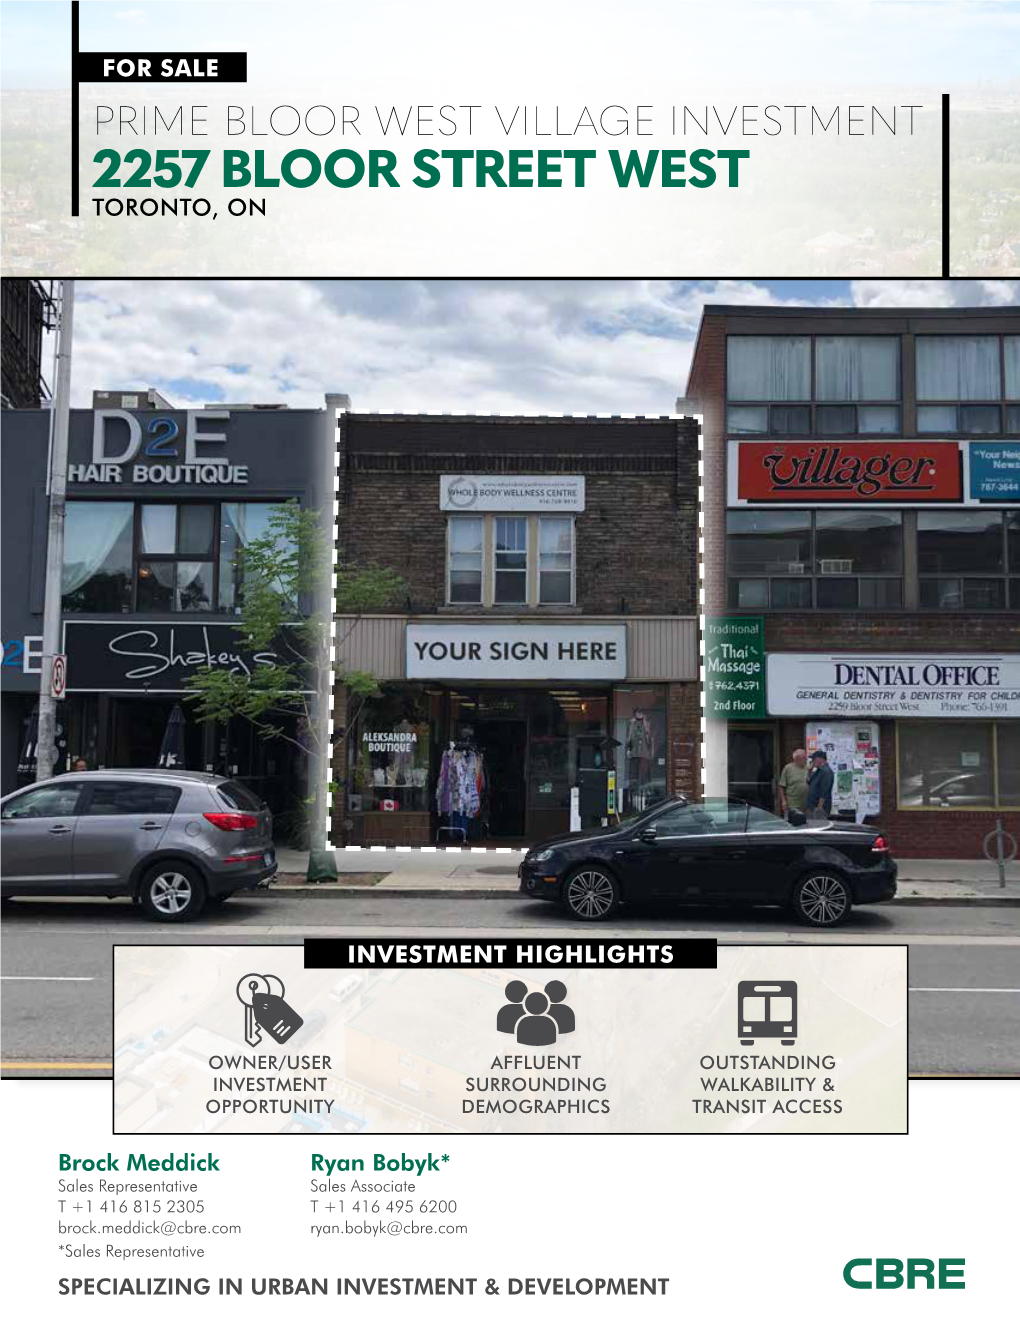 2257 Bloor Street West Toronto, On